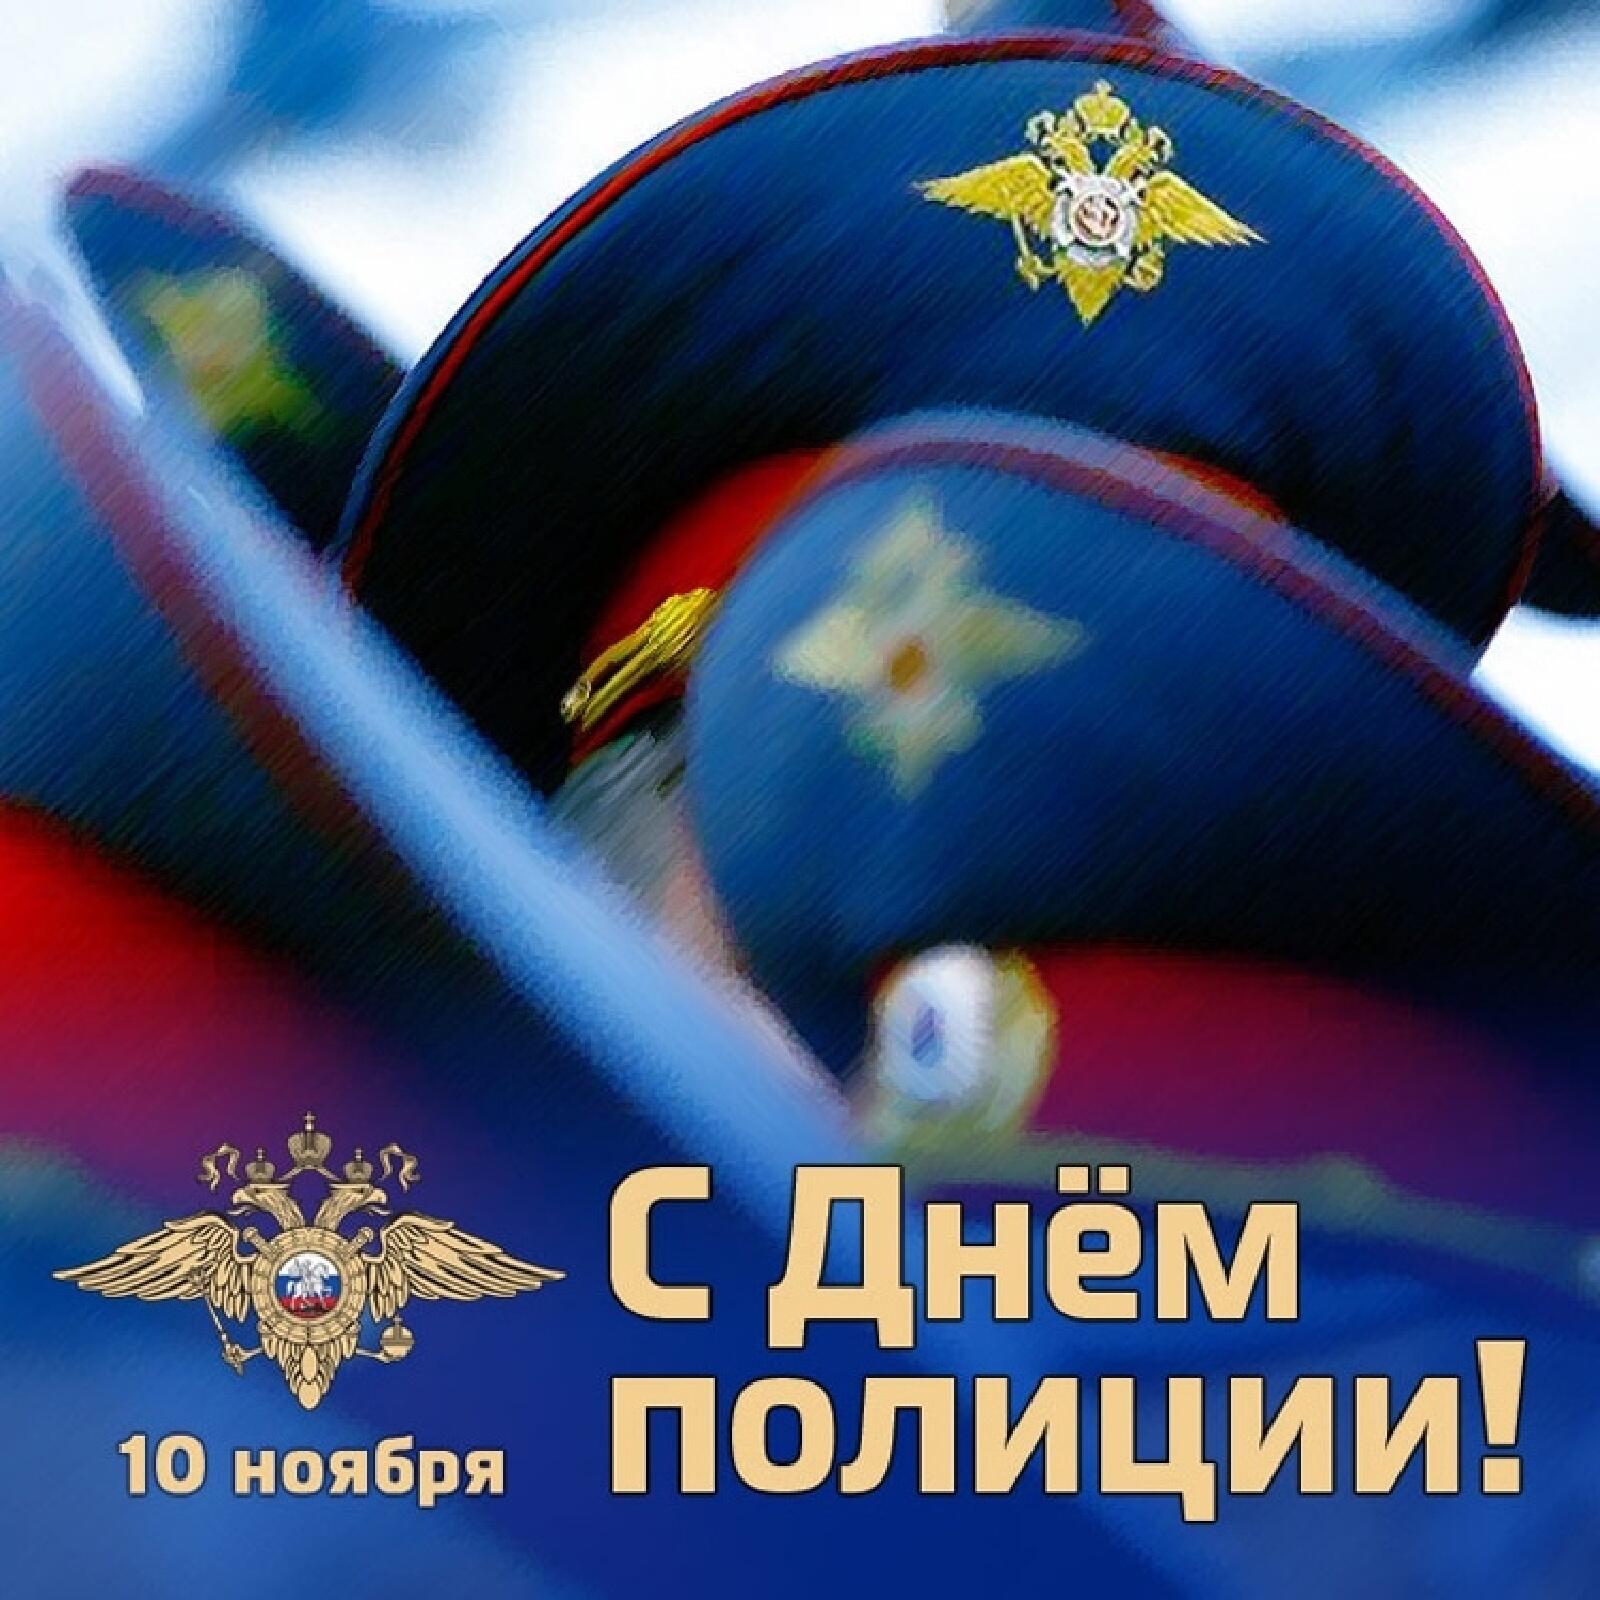 Уважаемые сотрудники и ветераны органов внутренних дел Качугского района! Поздравляем вас с профессиональным праздником!